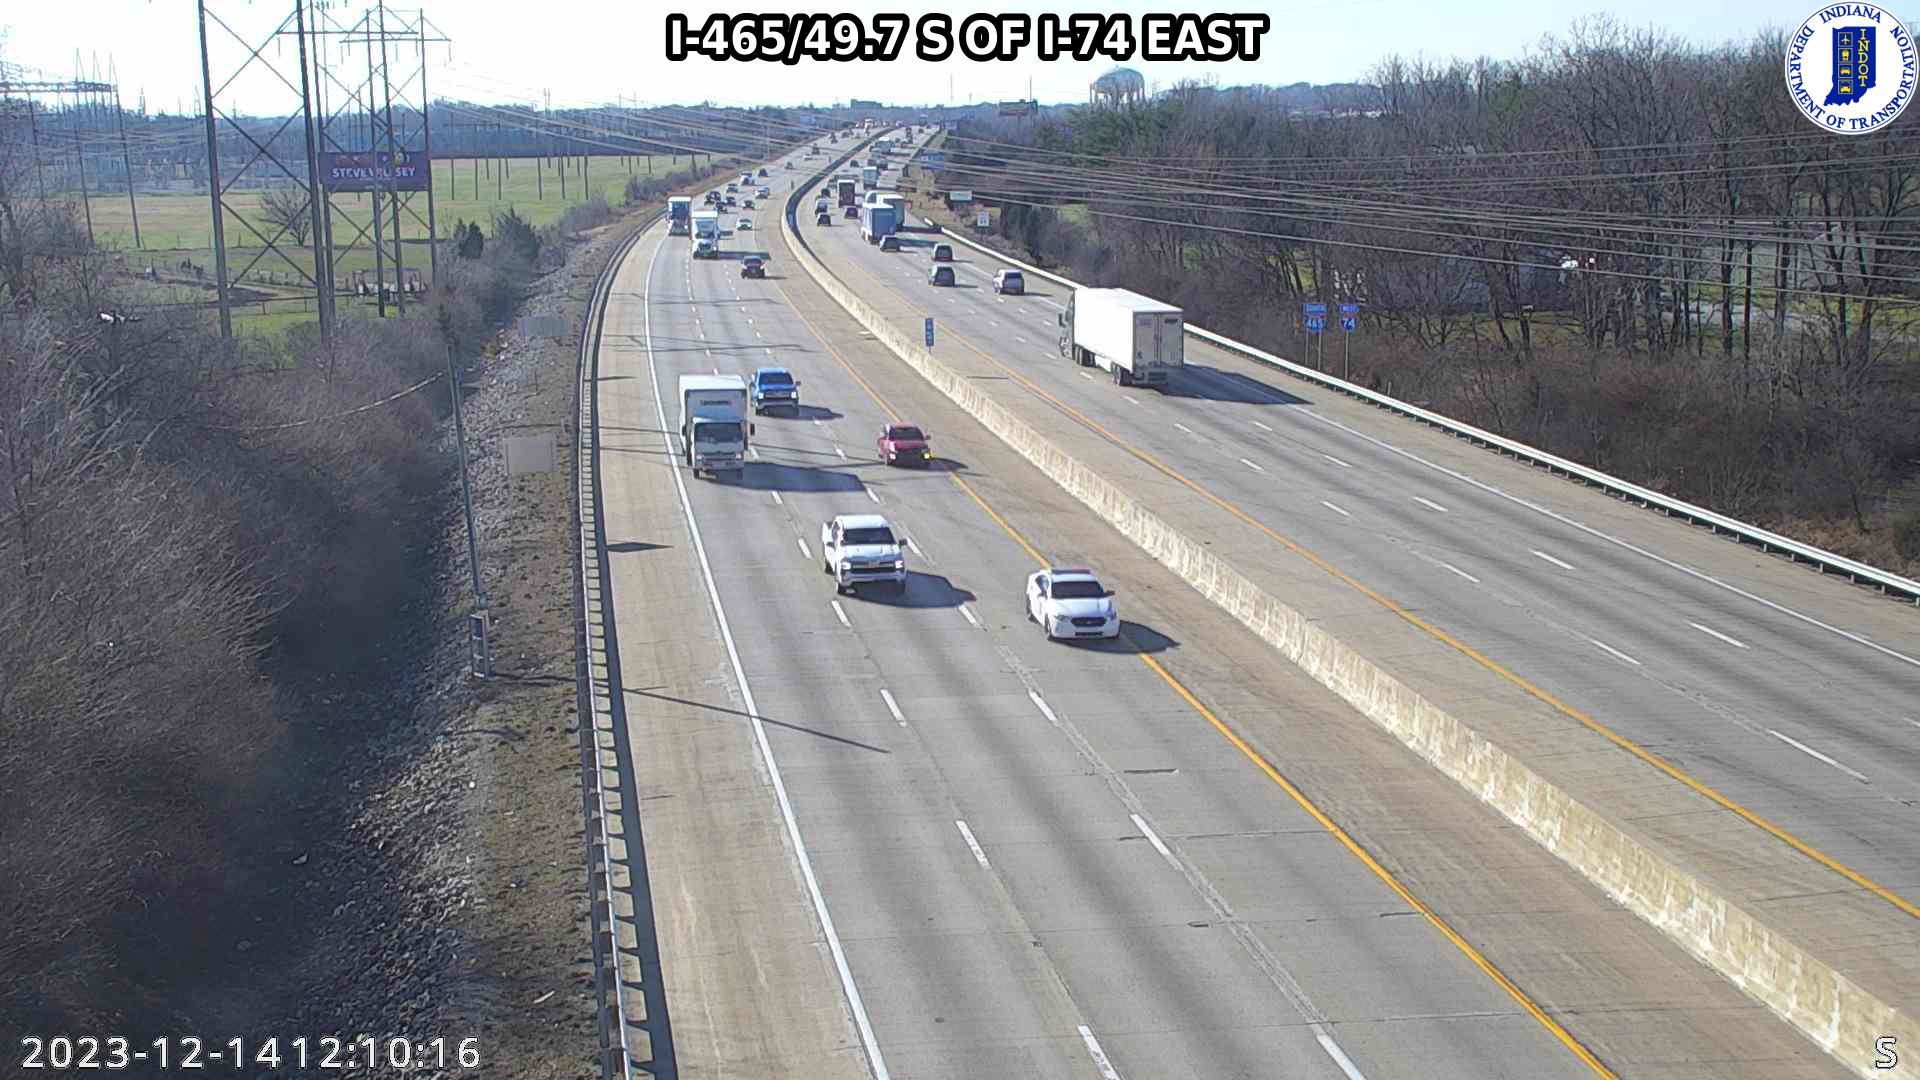 Traffic Cam Indianapolis › East: I-465: I-465/49.7 S OF I-74 EAST